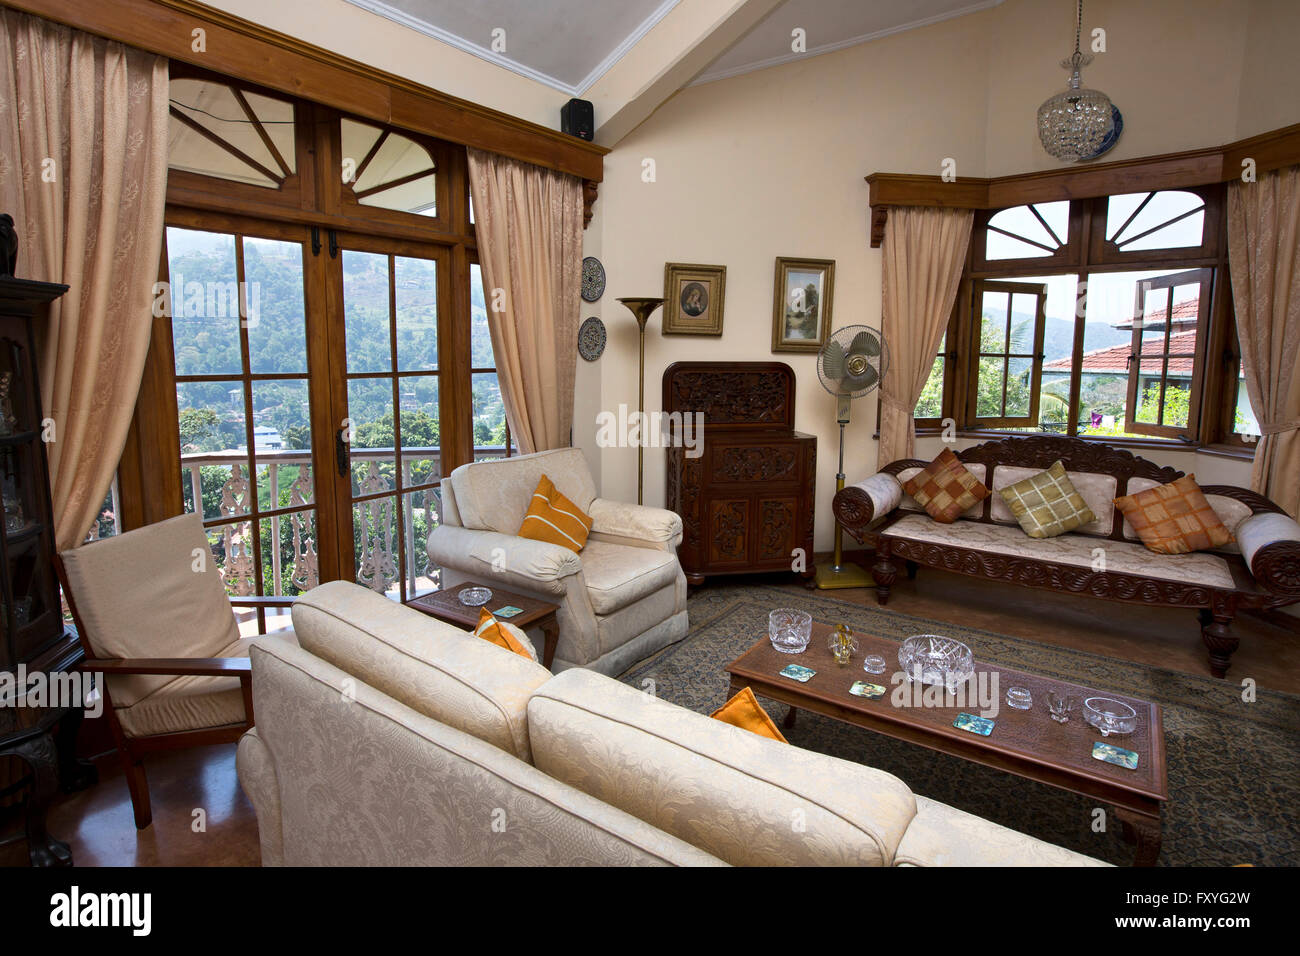 Sri Lanka, Kandy, Hantana Range homestay, comfortably furnished living room Stock Photo